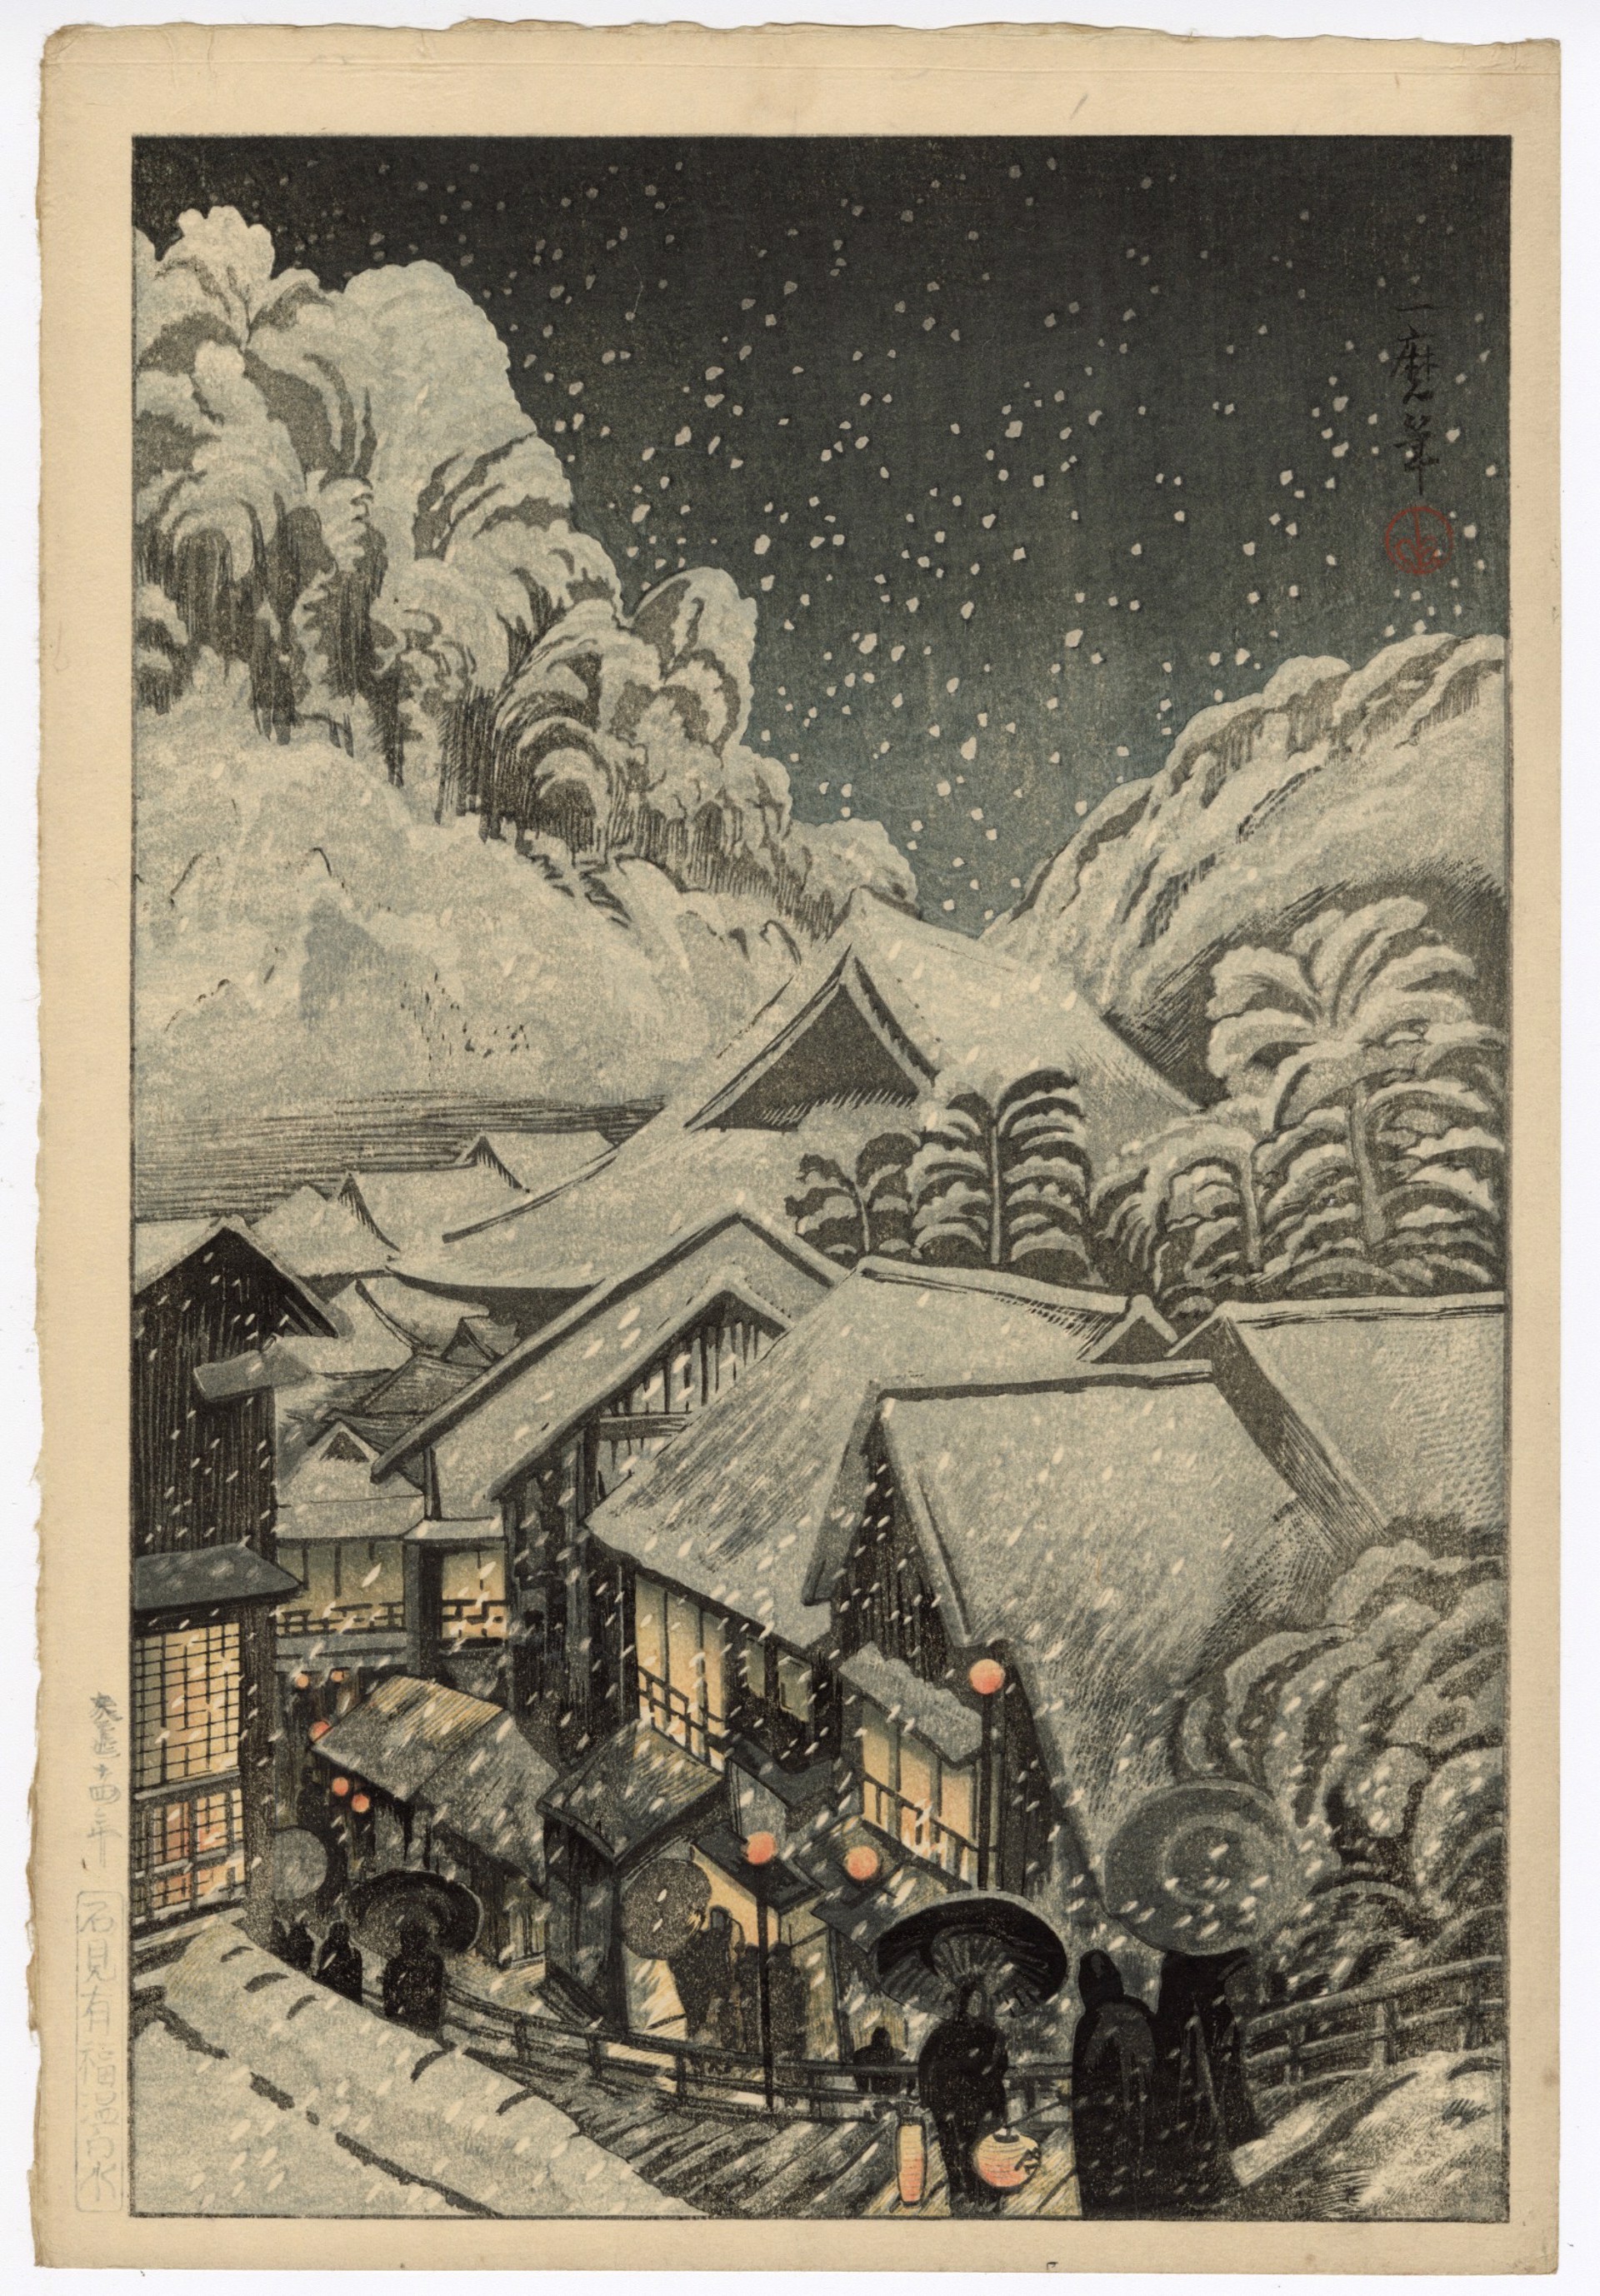 Arifuku (Yufuku) Hot Springs in Snow, Iwami (Iwami Yufuku Onsen) by Oda Kazuma